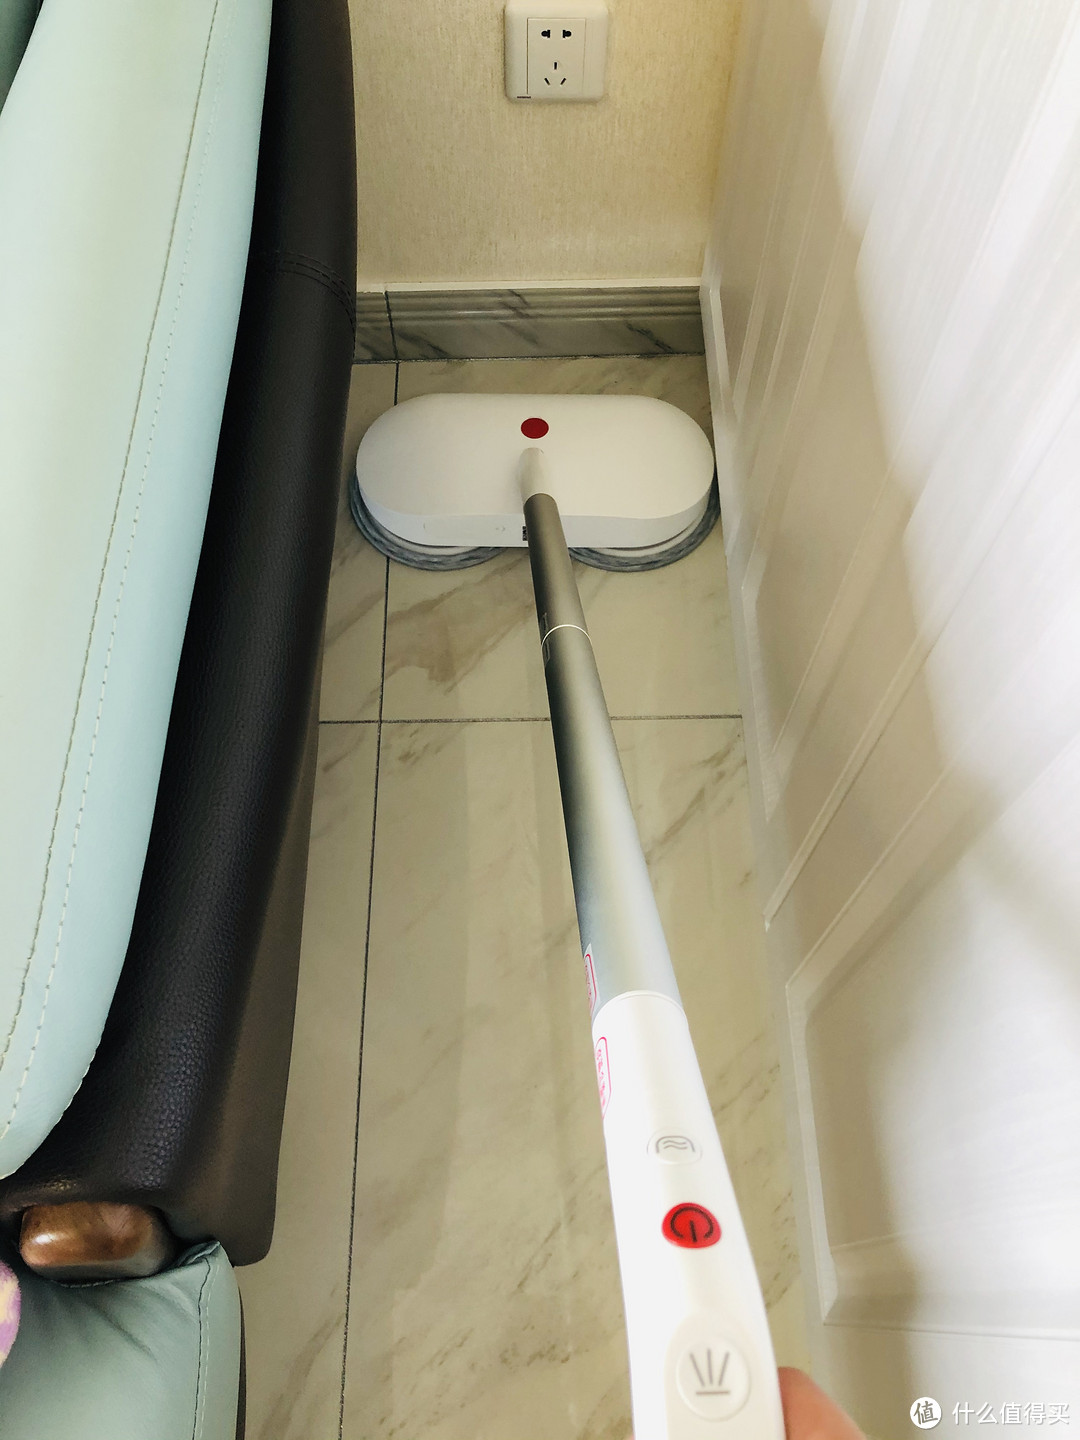 高效灵动一键清洗，懒人家居的利器—宜洁 YE-07 智控净洗擦地机